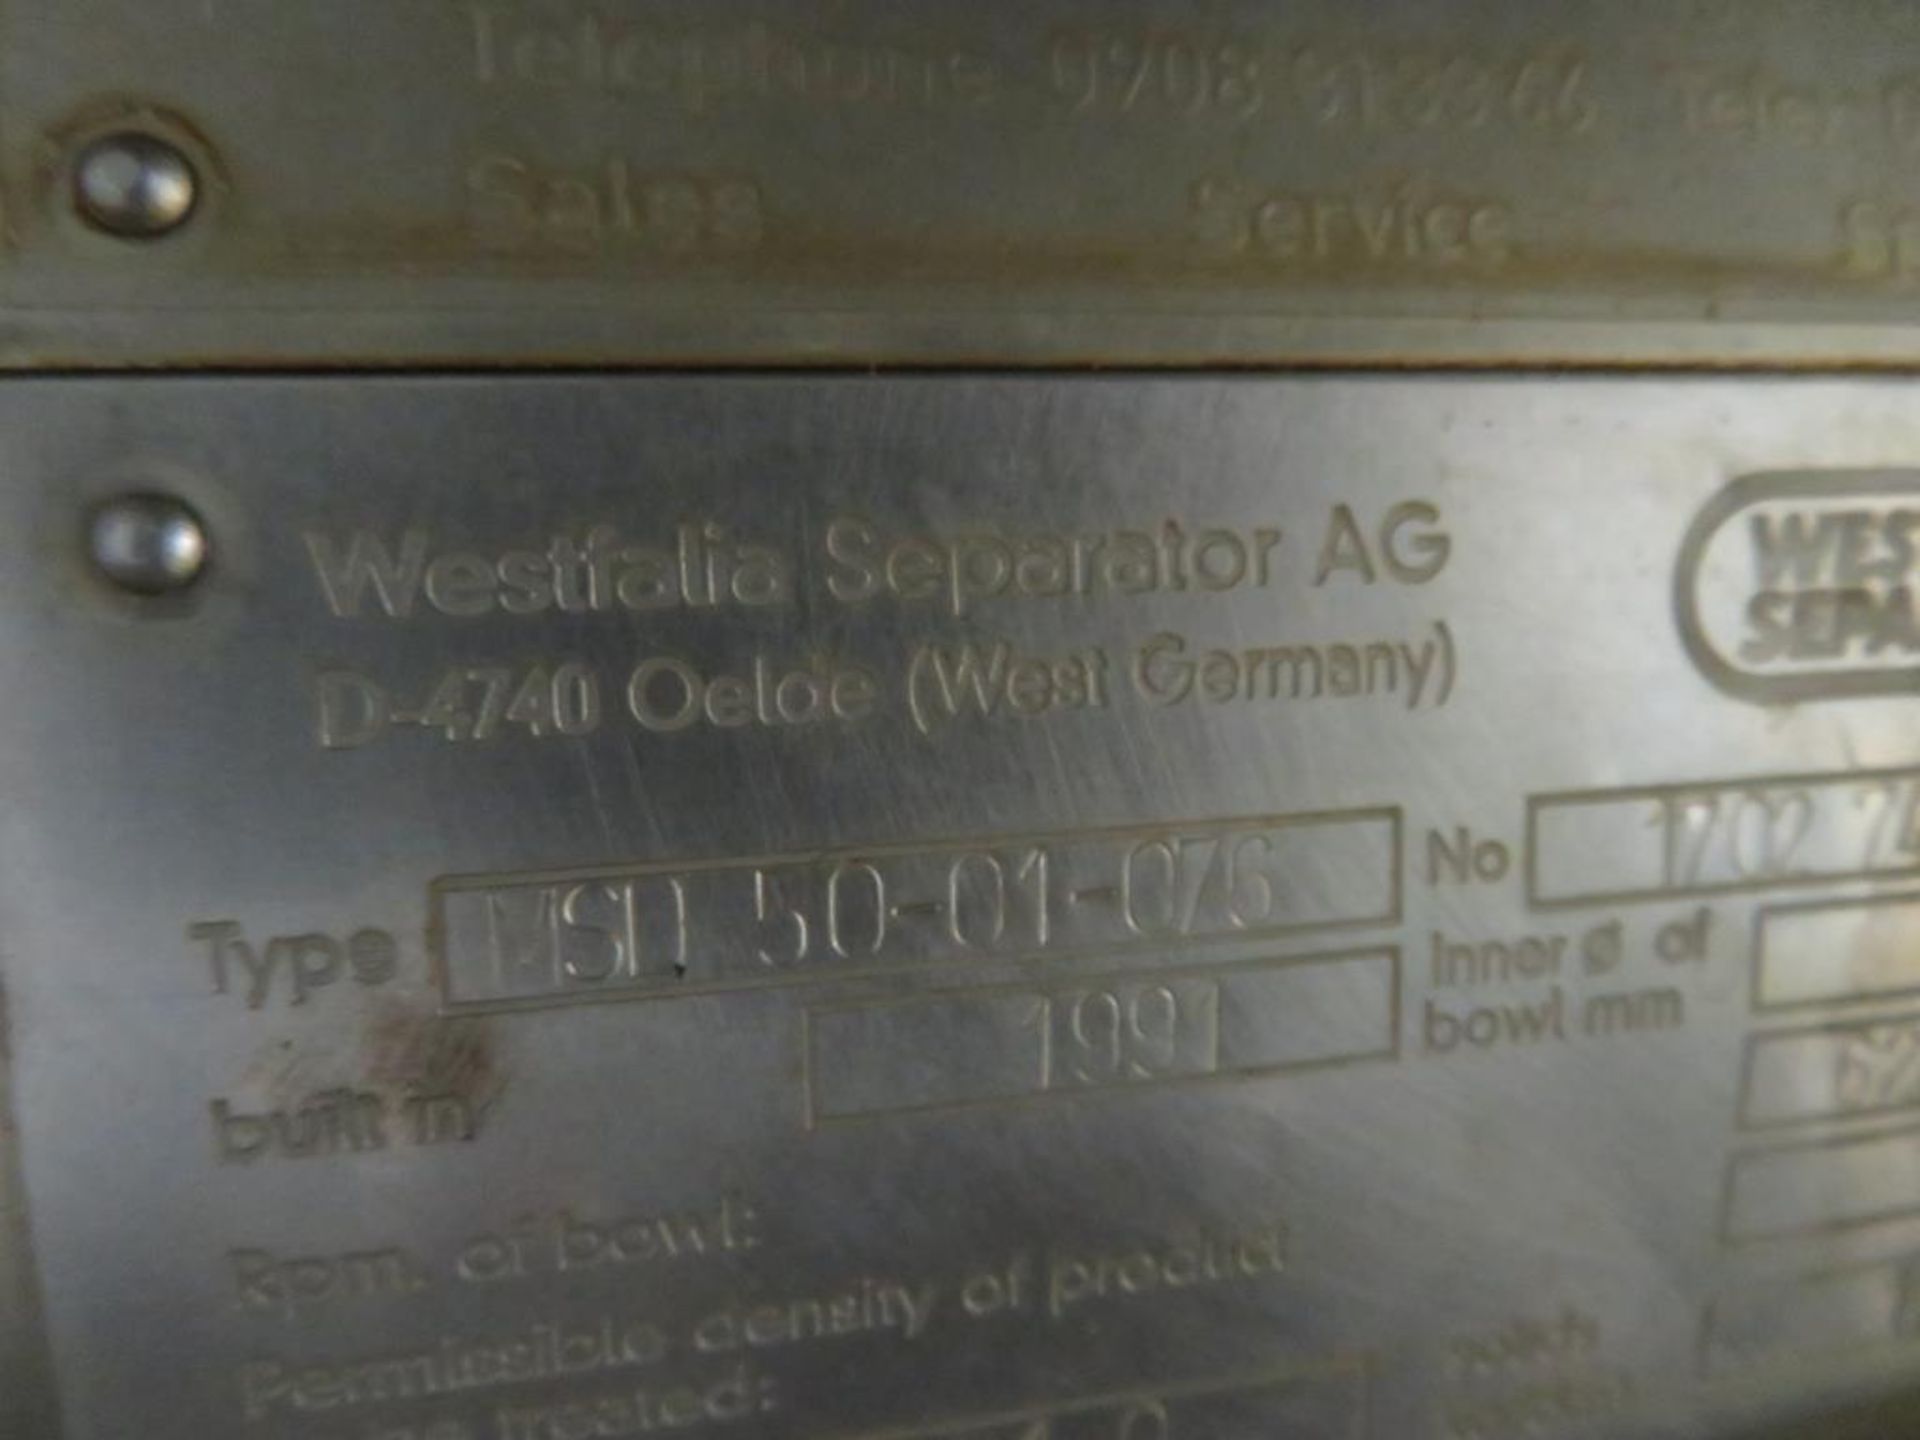 1991 Westfalia MSD 50-01-076 centrifugal separator - Image 3 of 10